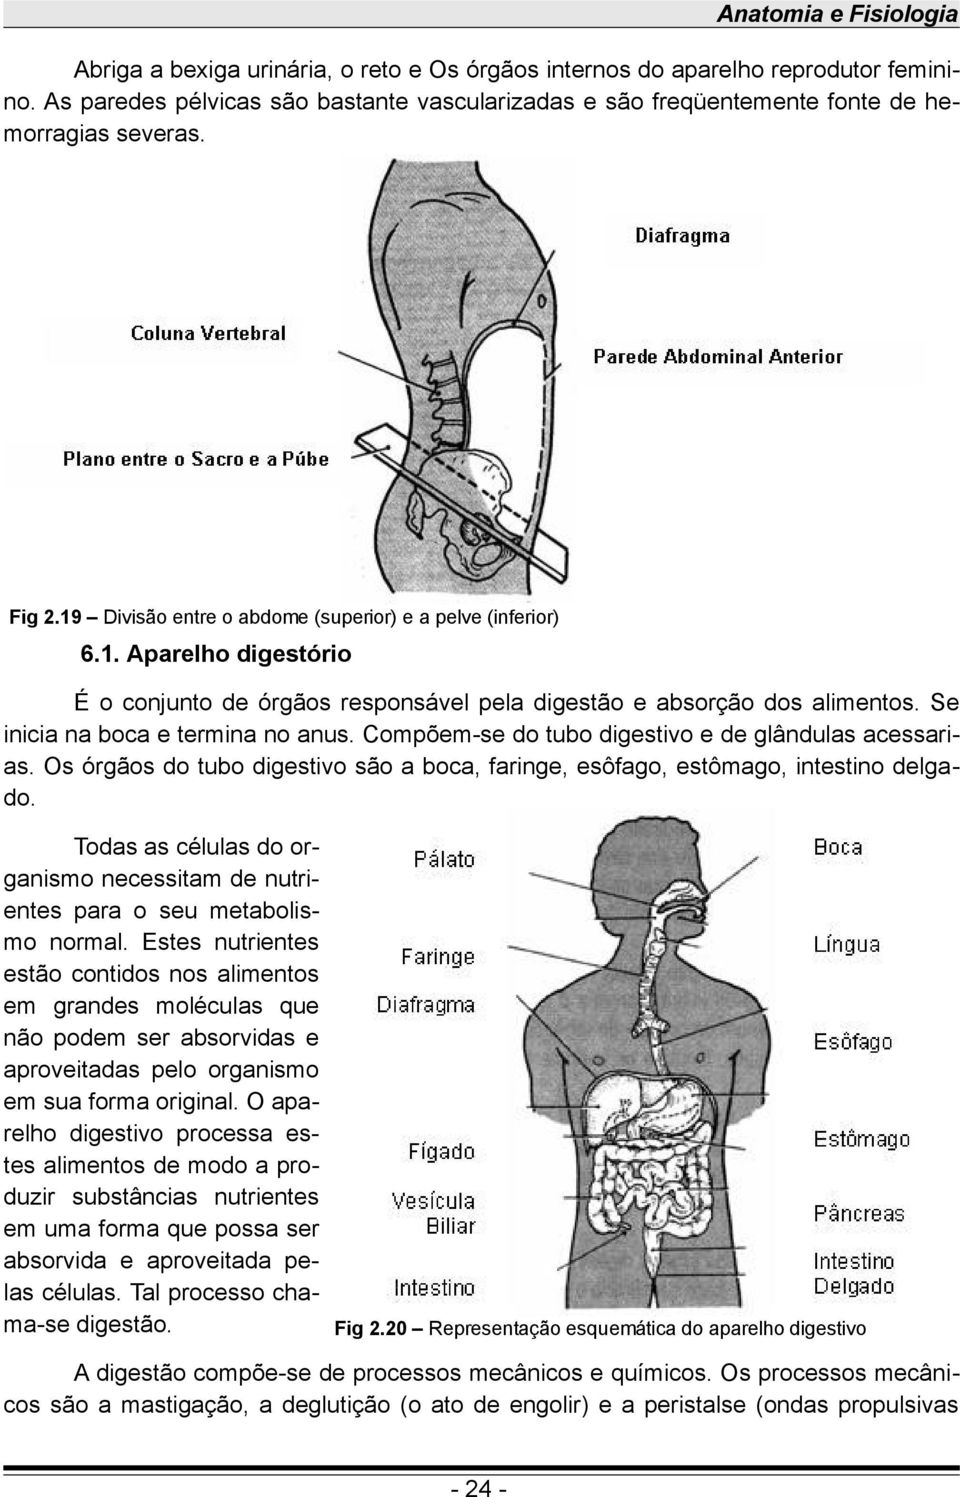 Divisão entre o abdome (superior) e a pelve (inferior) 6.1. Aparelho digestório É o conjunto de órgãos responsável pela digestão e absorção dos alimentos. Se inicia na boca e termina no anus.